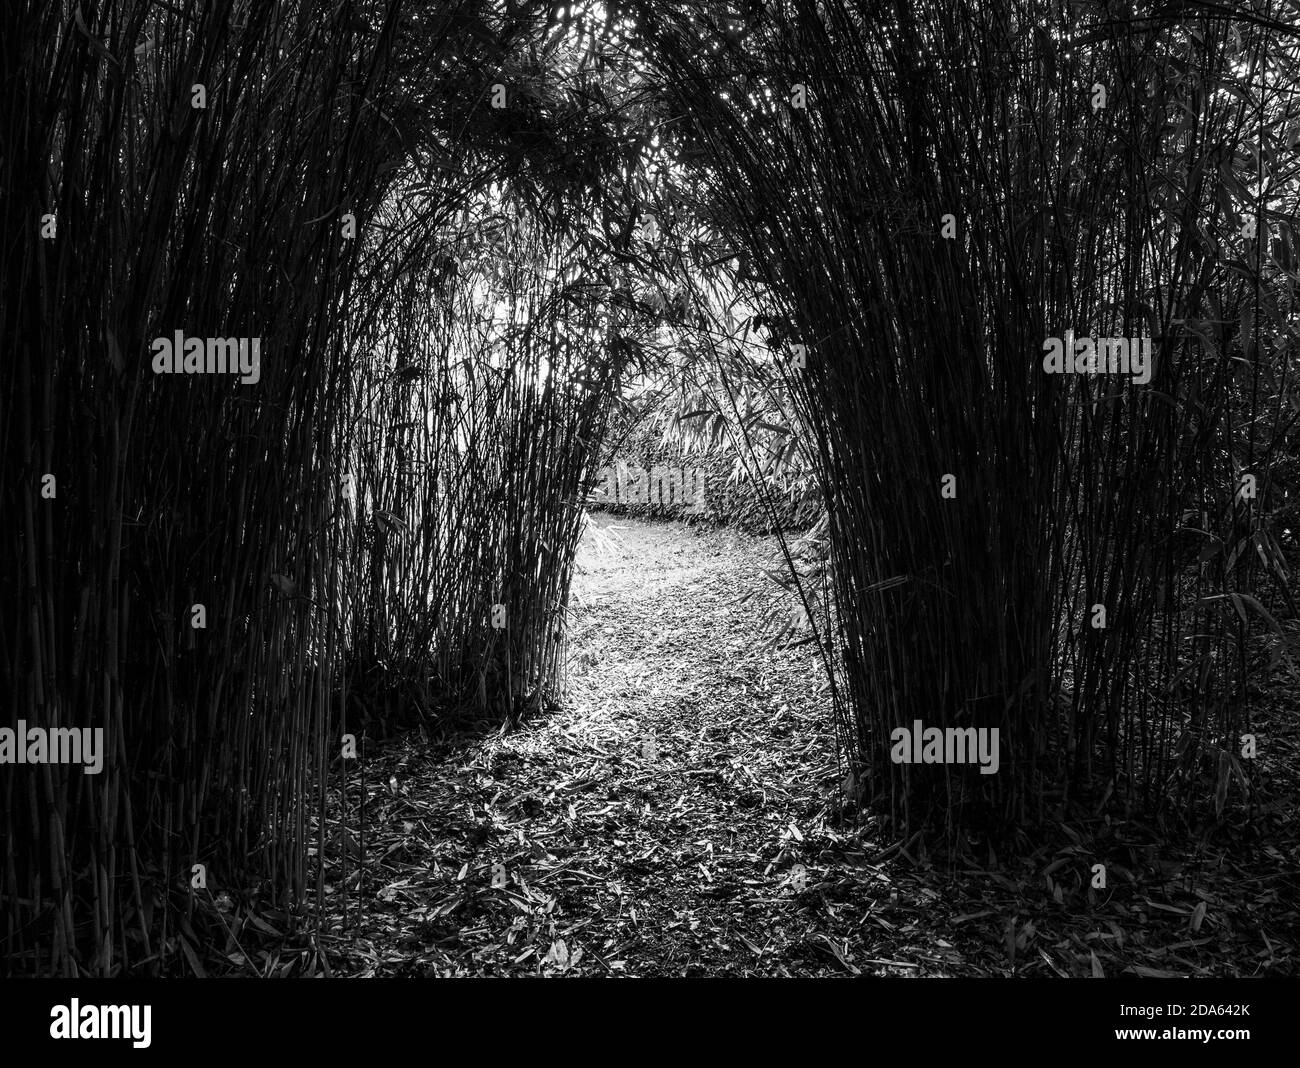 Paesaggio bianco e nero, Bamboo Grove, Bamboo, Englefield House Gardens, Englefield Estate, Englefield, Berkshire, Inghilterra, Regno Unito, GB. Foto Stock